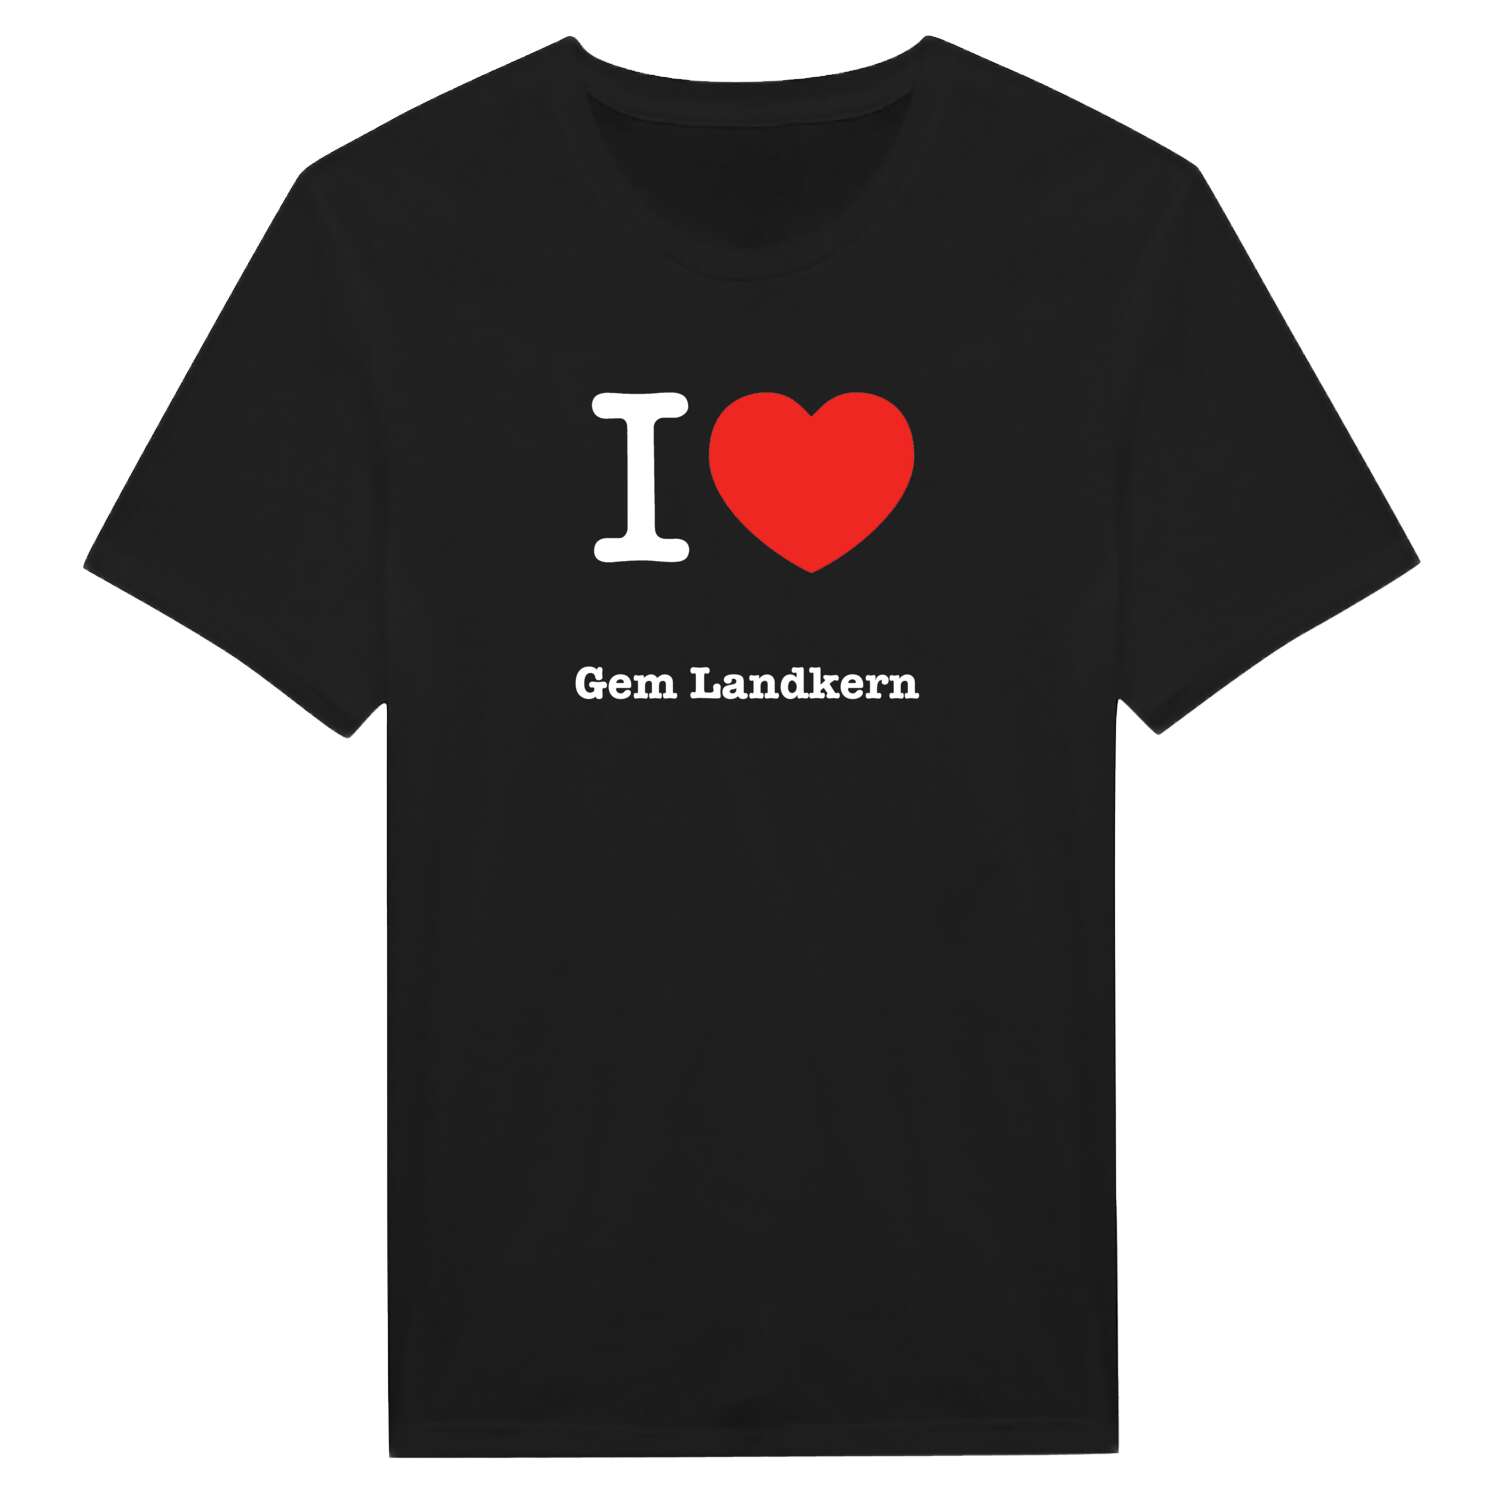 Gem Landkern T-Shirt »I love«